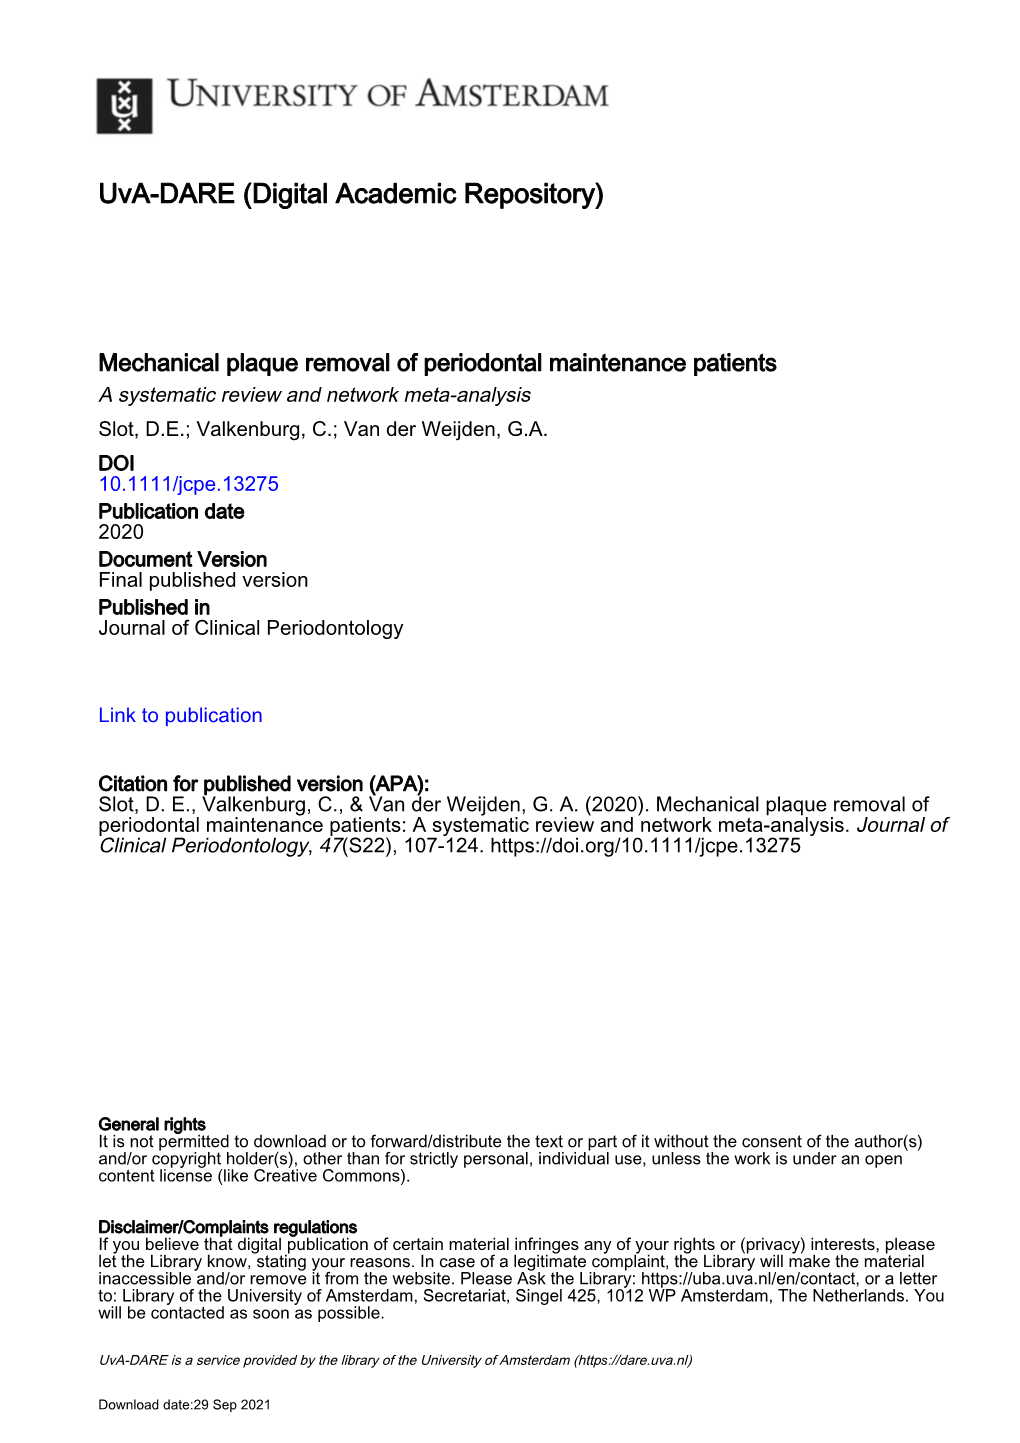 Jcpe.13275 Publication Date 2020 Document Version Final Published Version Published in Journal of Clinical Periodontology